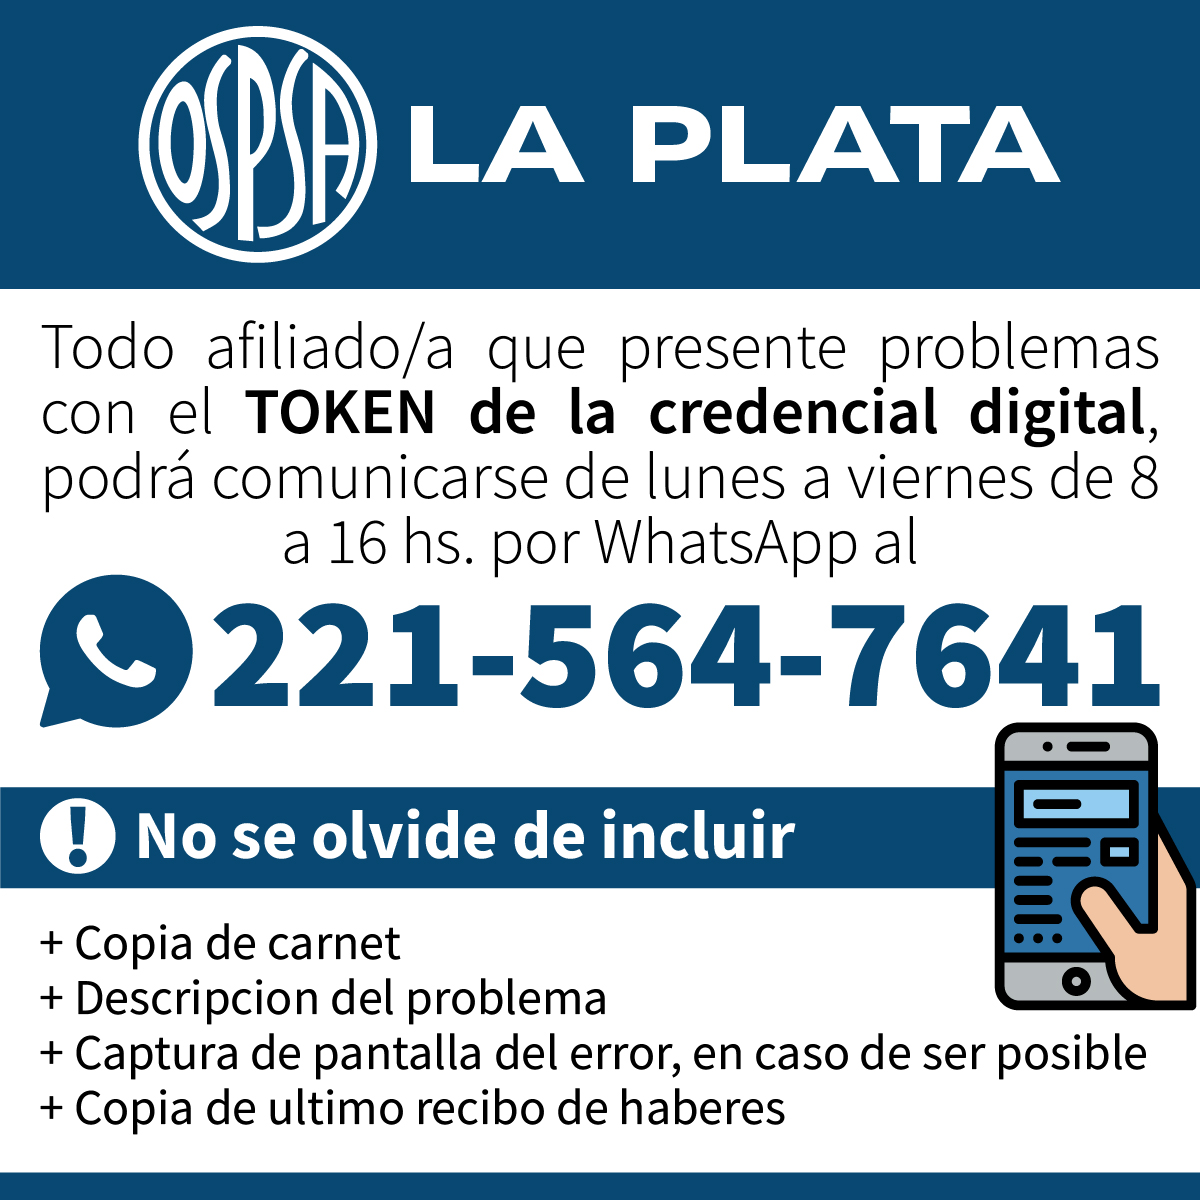 ATENCION #OSPSALaPlata
#CredencialDigital #token @nogueirael21 @PedroBorgini @fatsa @hectordaer